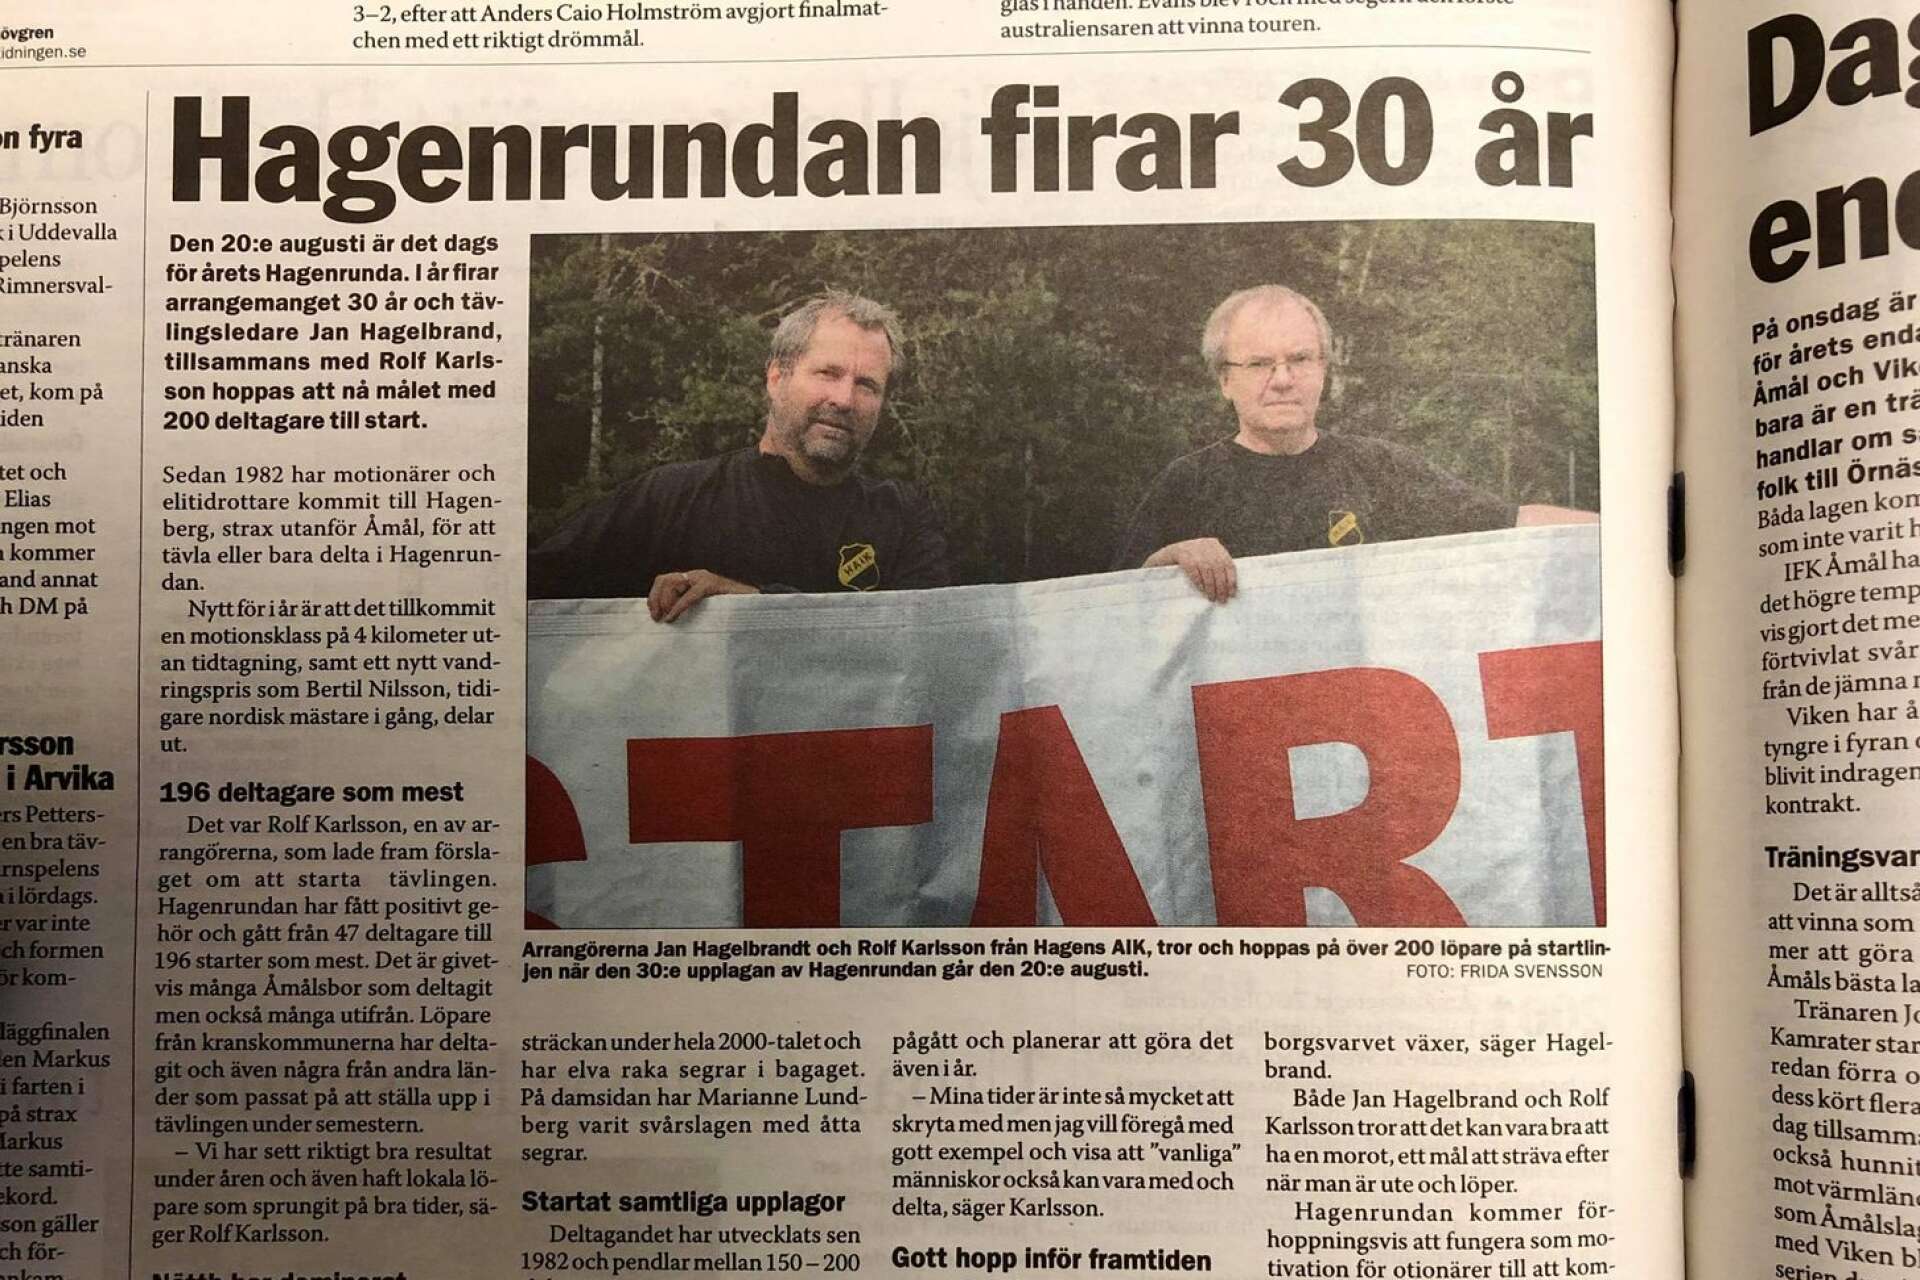 Jan Hagelbrand och Rolf Karlsson från Hagens AIK inför föreningens Hagenrunda 2011.